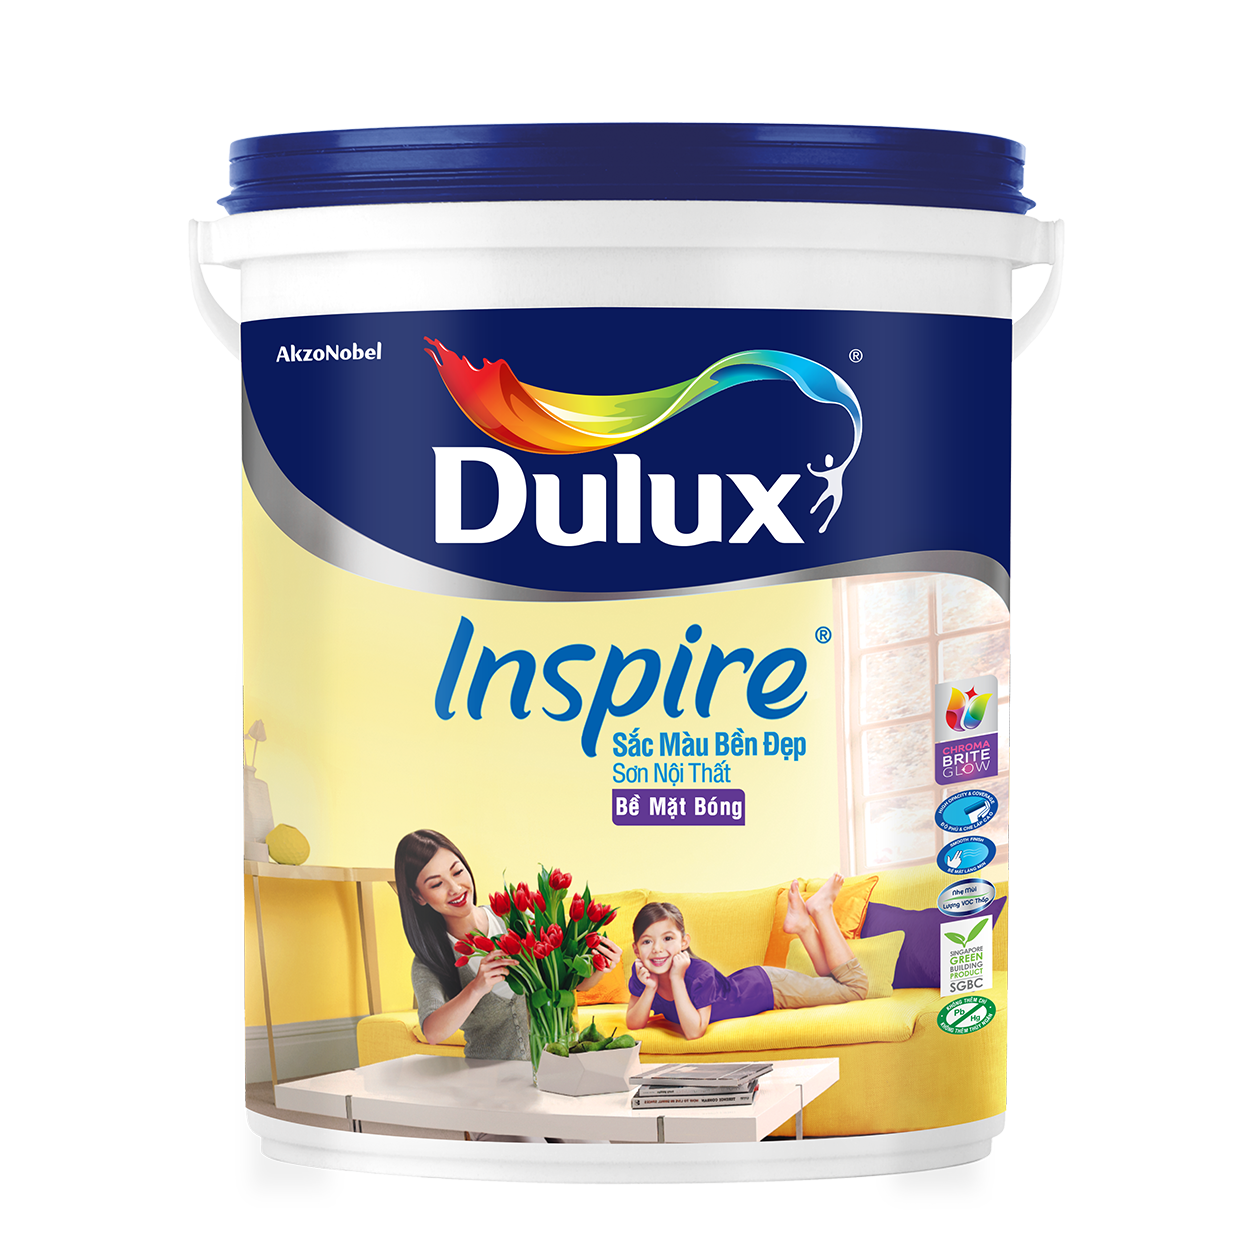 Dulux Inspire-sơn bóng giá rẻ: Dulux Inspire là sự lựa chọn hoàn hảo cho những ai đang tìm kiếm sơn bóng với mức giá phải chăng. Với màu sắc tươi sáng và chất lượng đảm bảo, Dulux Inspire mang đến cho không gian của bạn sự mới mẻ và đẹp mắt. Hãy xem hình ảnh liên quan để tìm hiểu thêm về sản phẩm này.